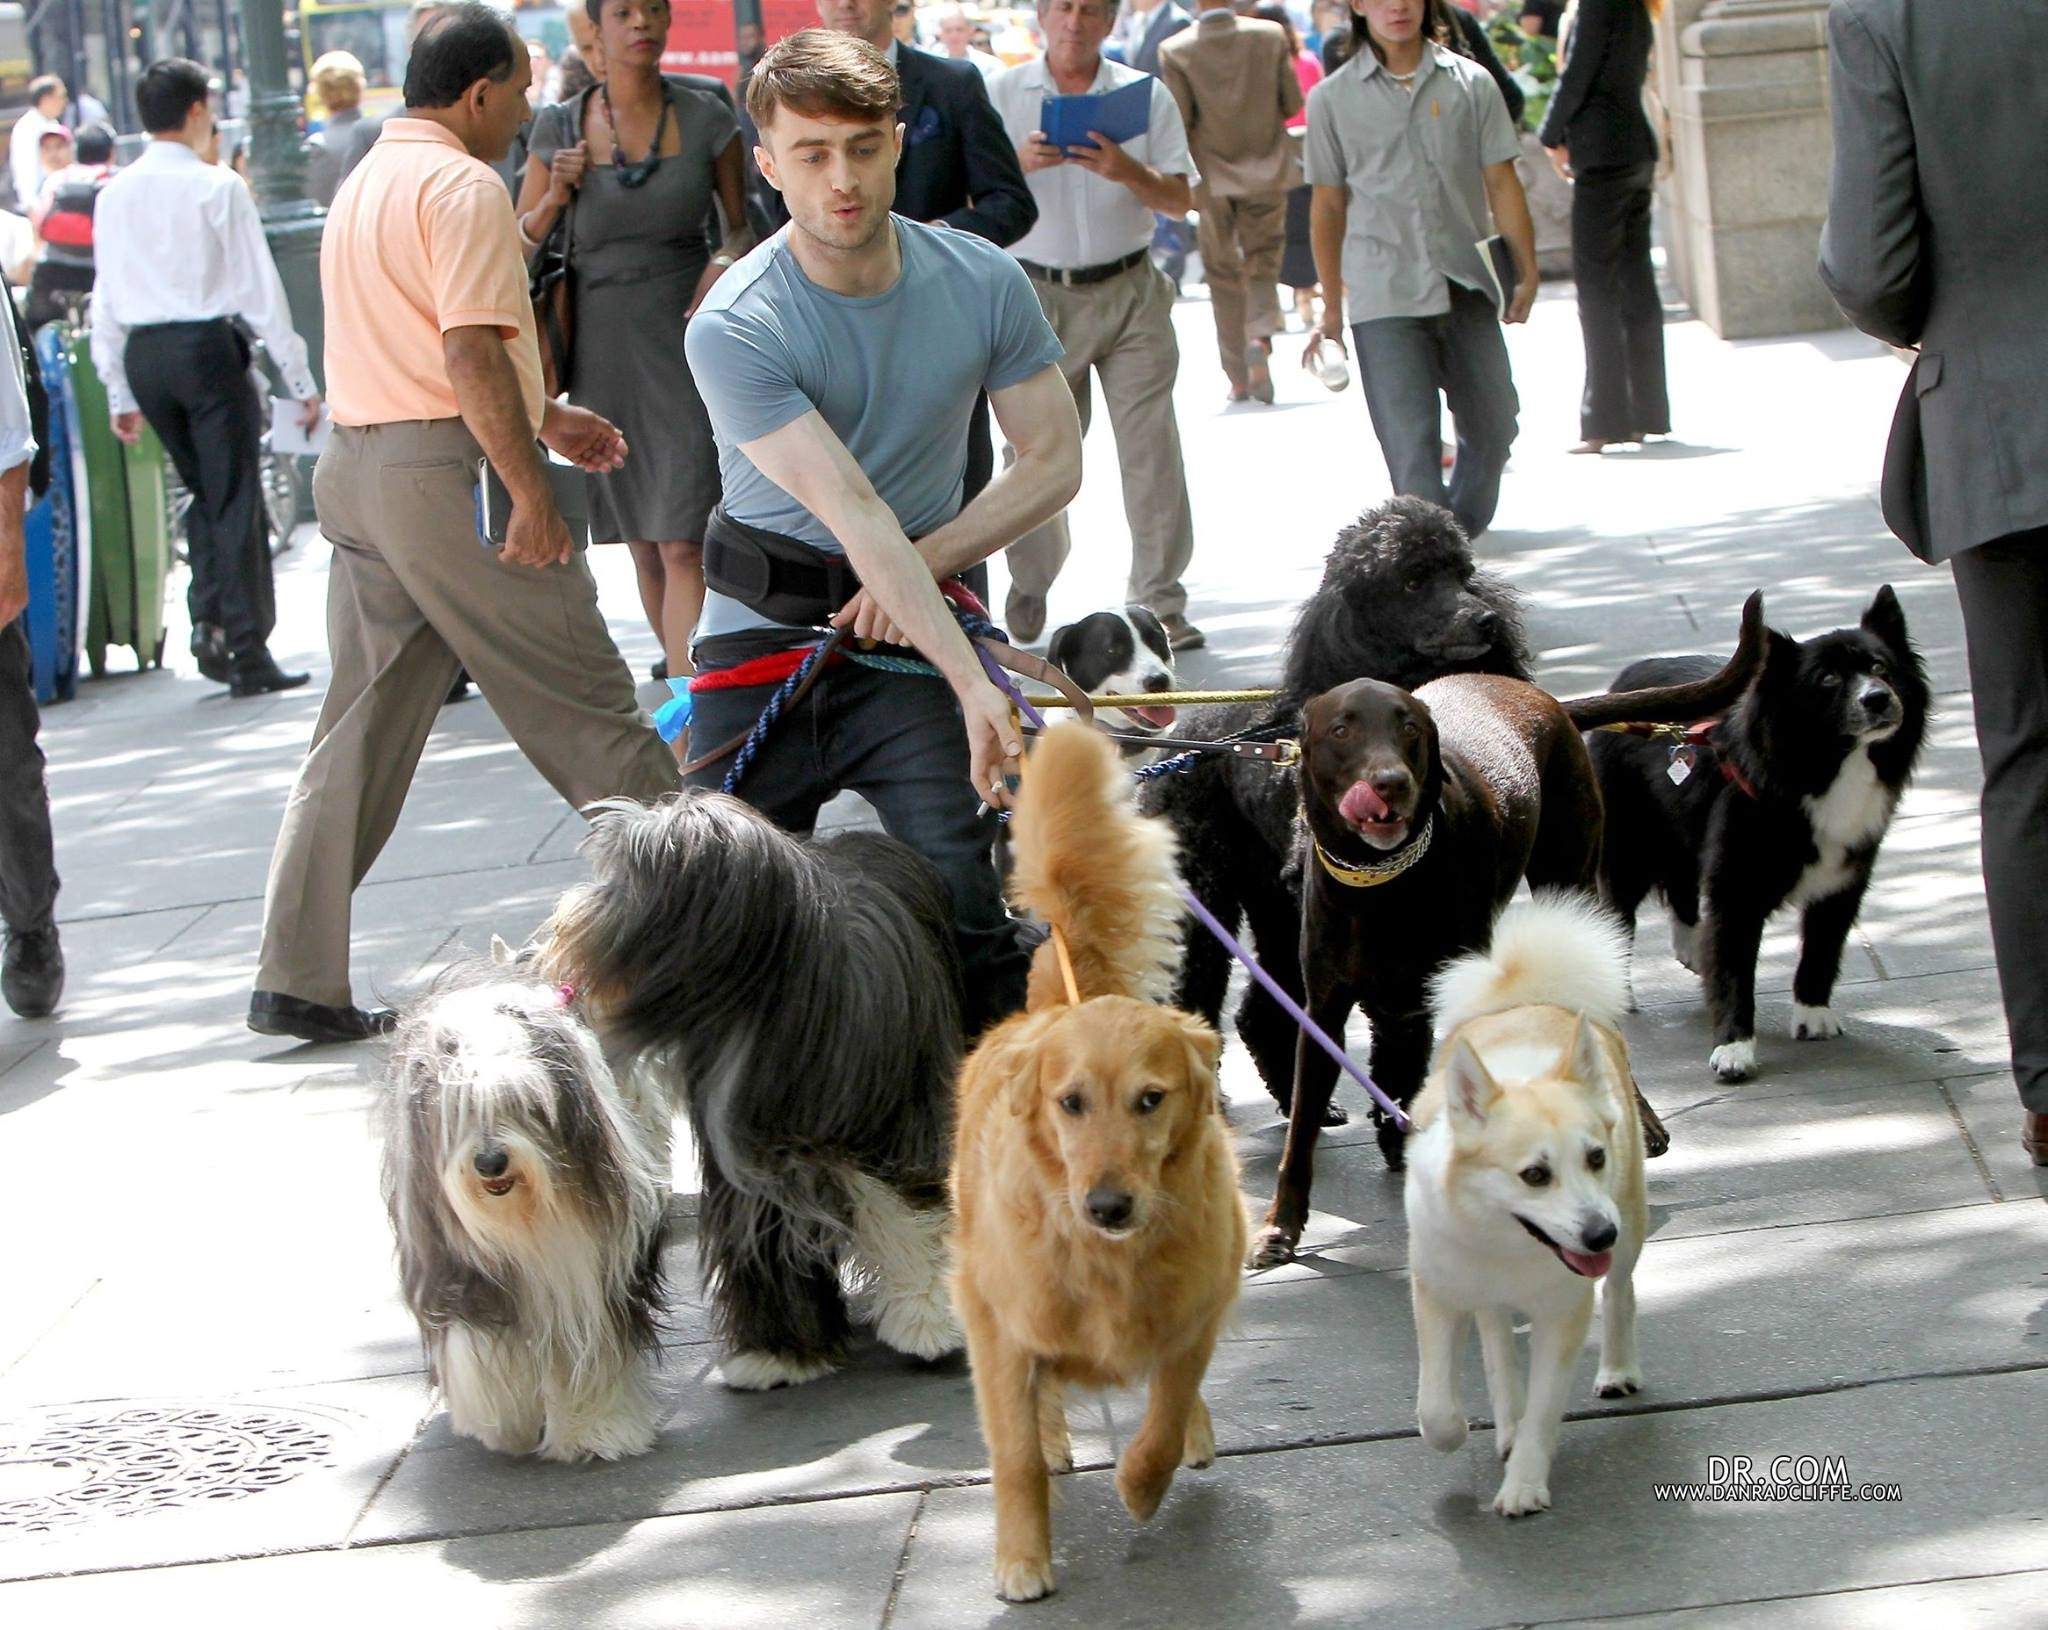 Дэниел Рэдклифф — Выгульщик собак. Дэниел Рэдклифф выгуливает собак. Дэниел Рэдклифф с собаками. Дэниел Рэдклифф и много собак.